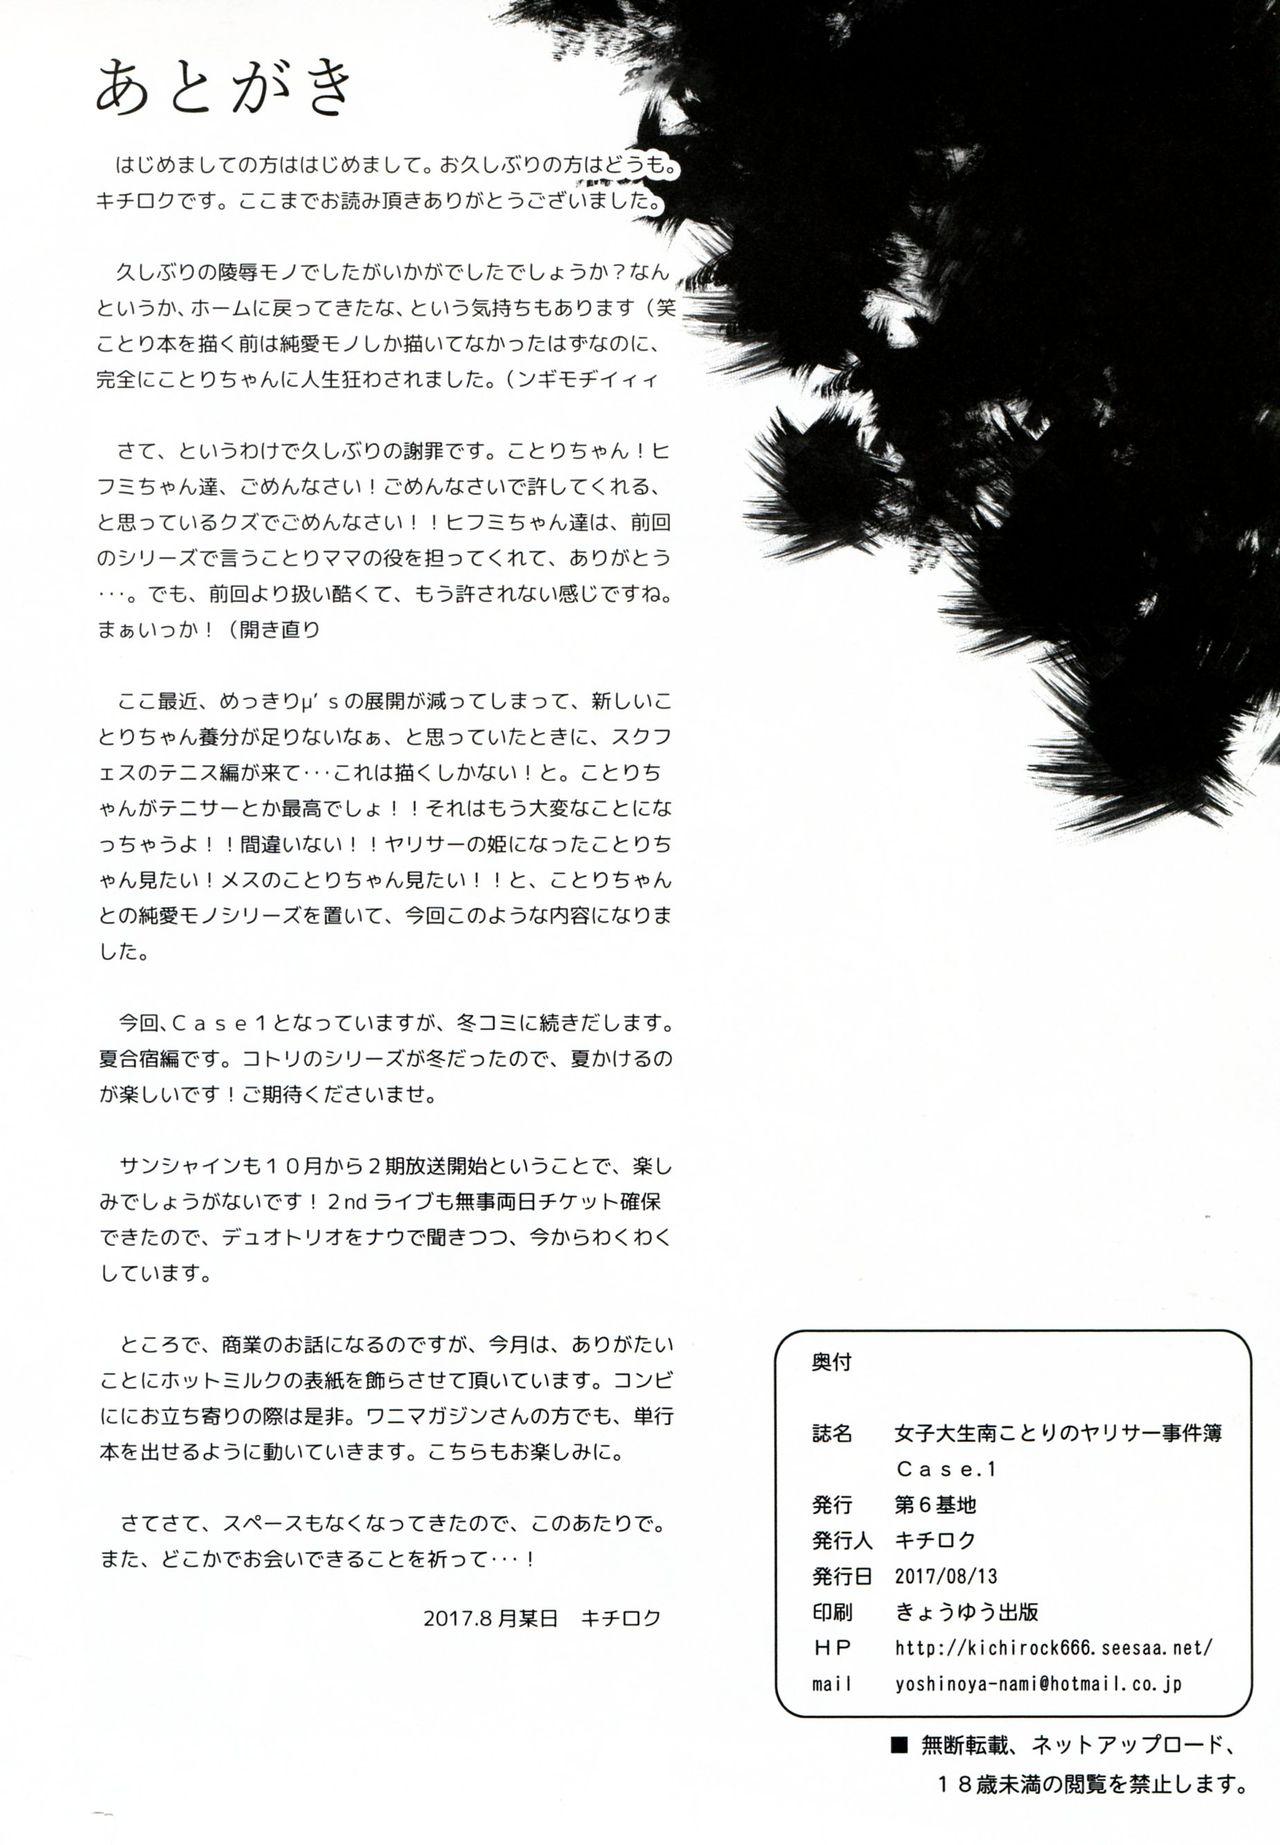 Joshidaisei Minami Kotori no Yarisa jikenbo Case.1 37